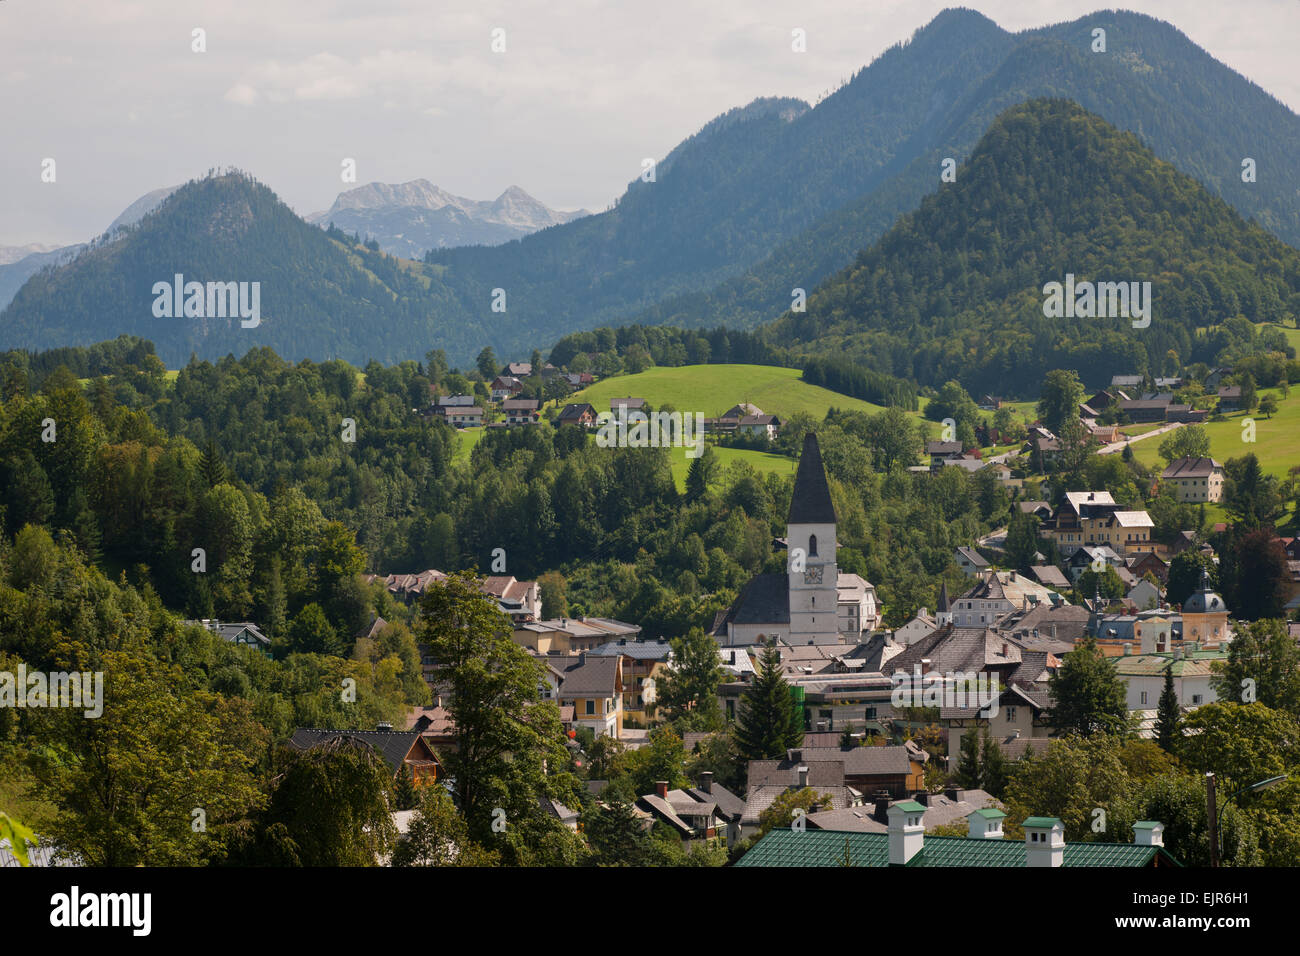 Bad Aussee mit Radling und Lawinenstein, Stiria, Salzkammergut, Austria Foto Stock